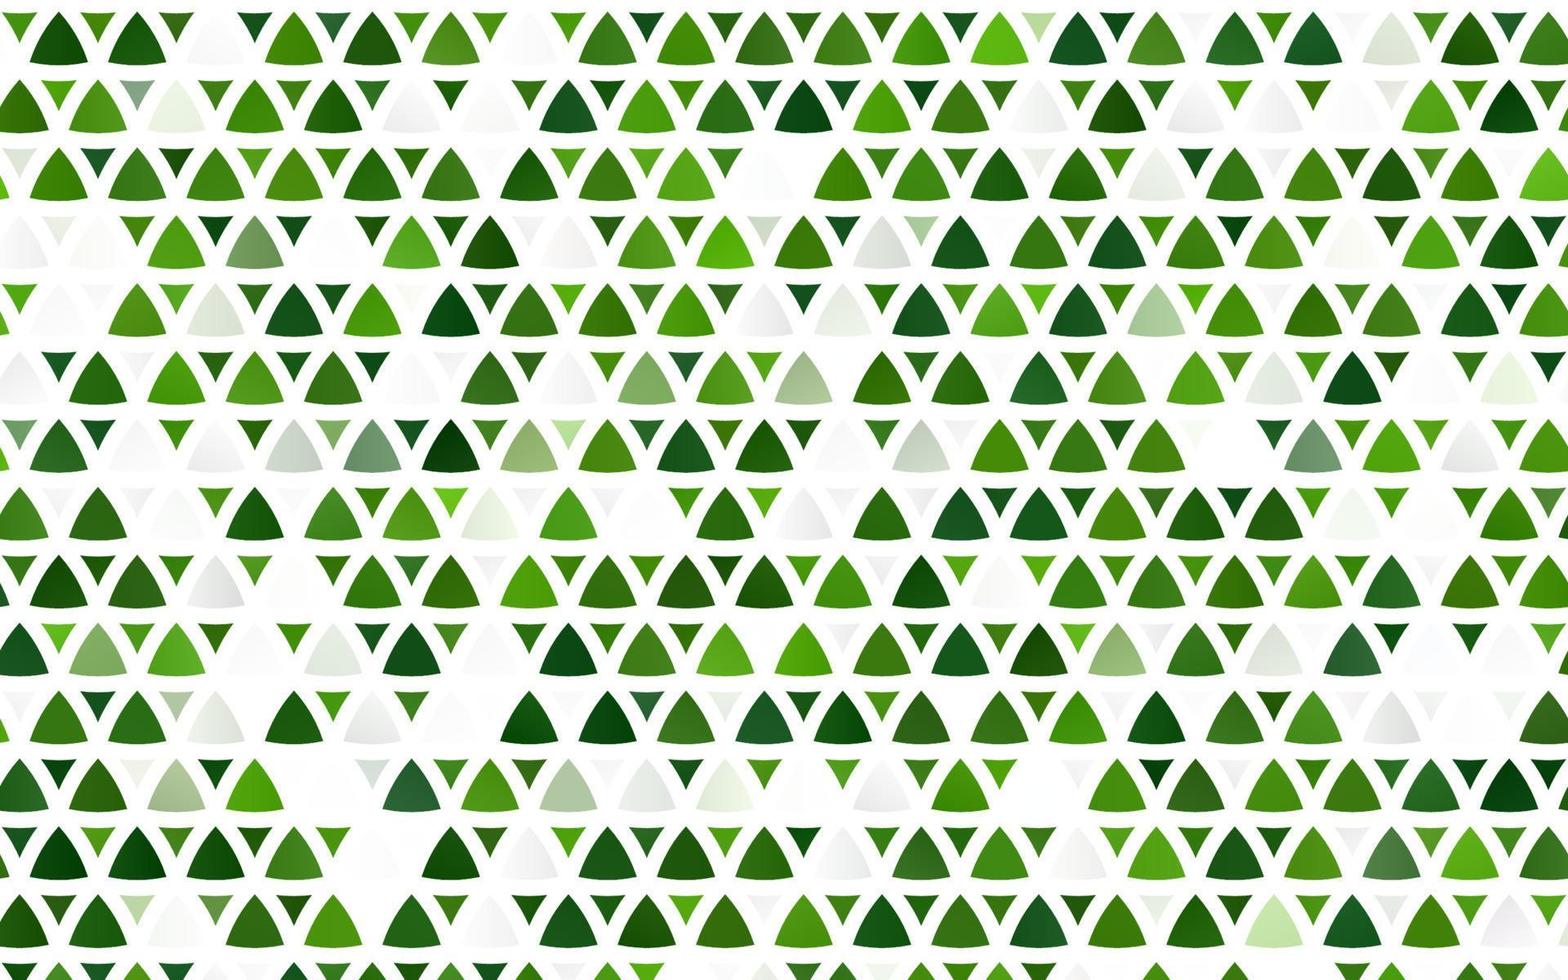 pano de fundo sem emenda do vetor verde claro com linhas, triângulos.